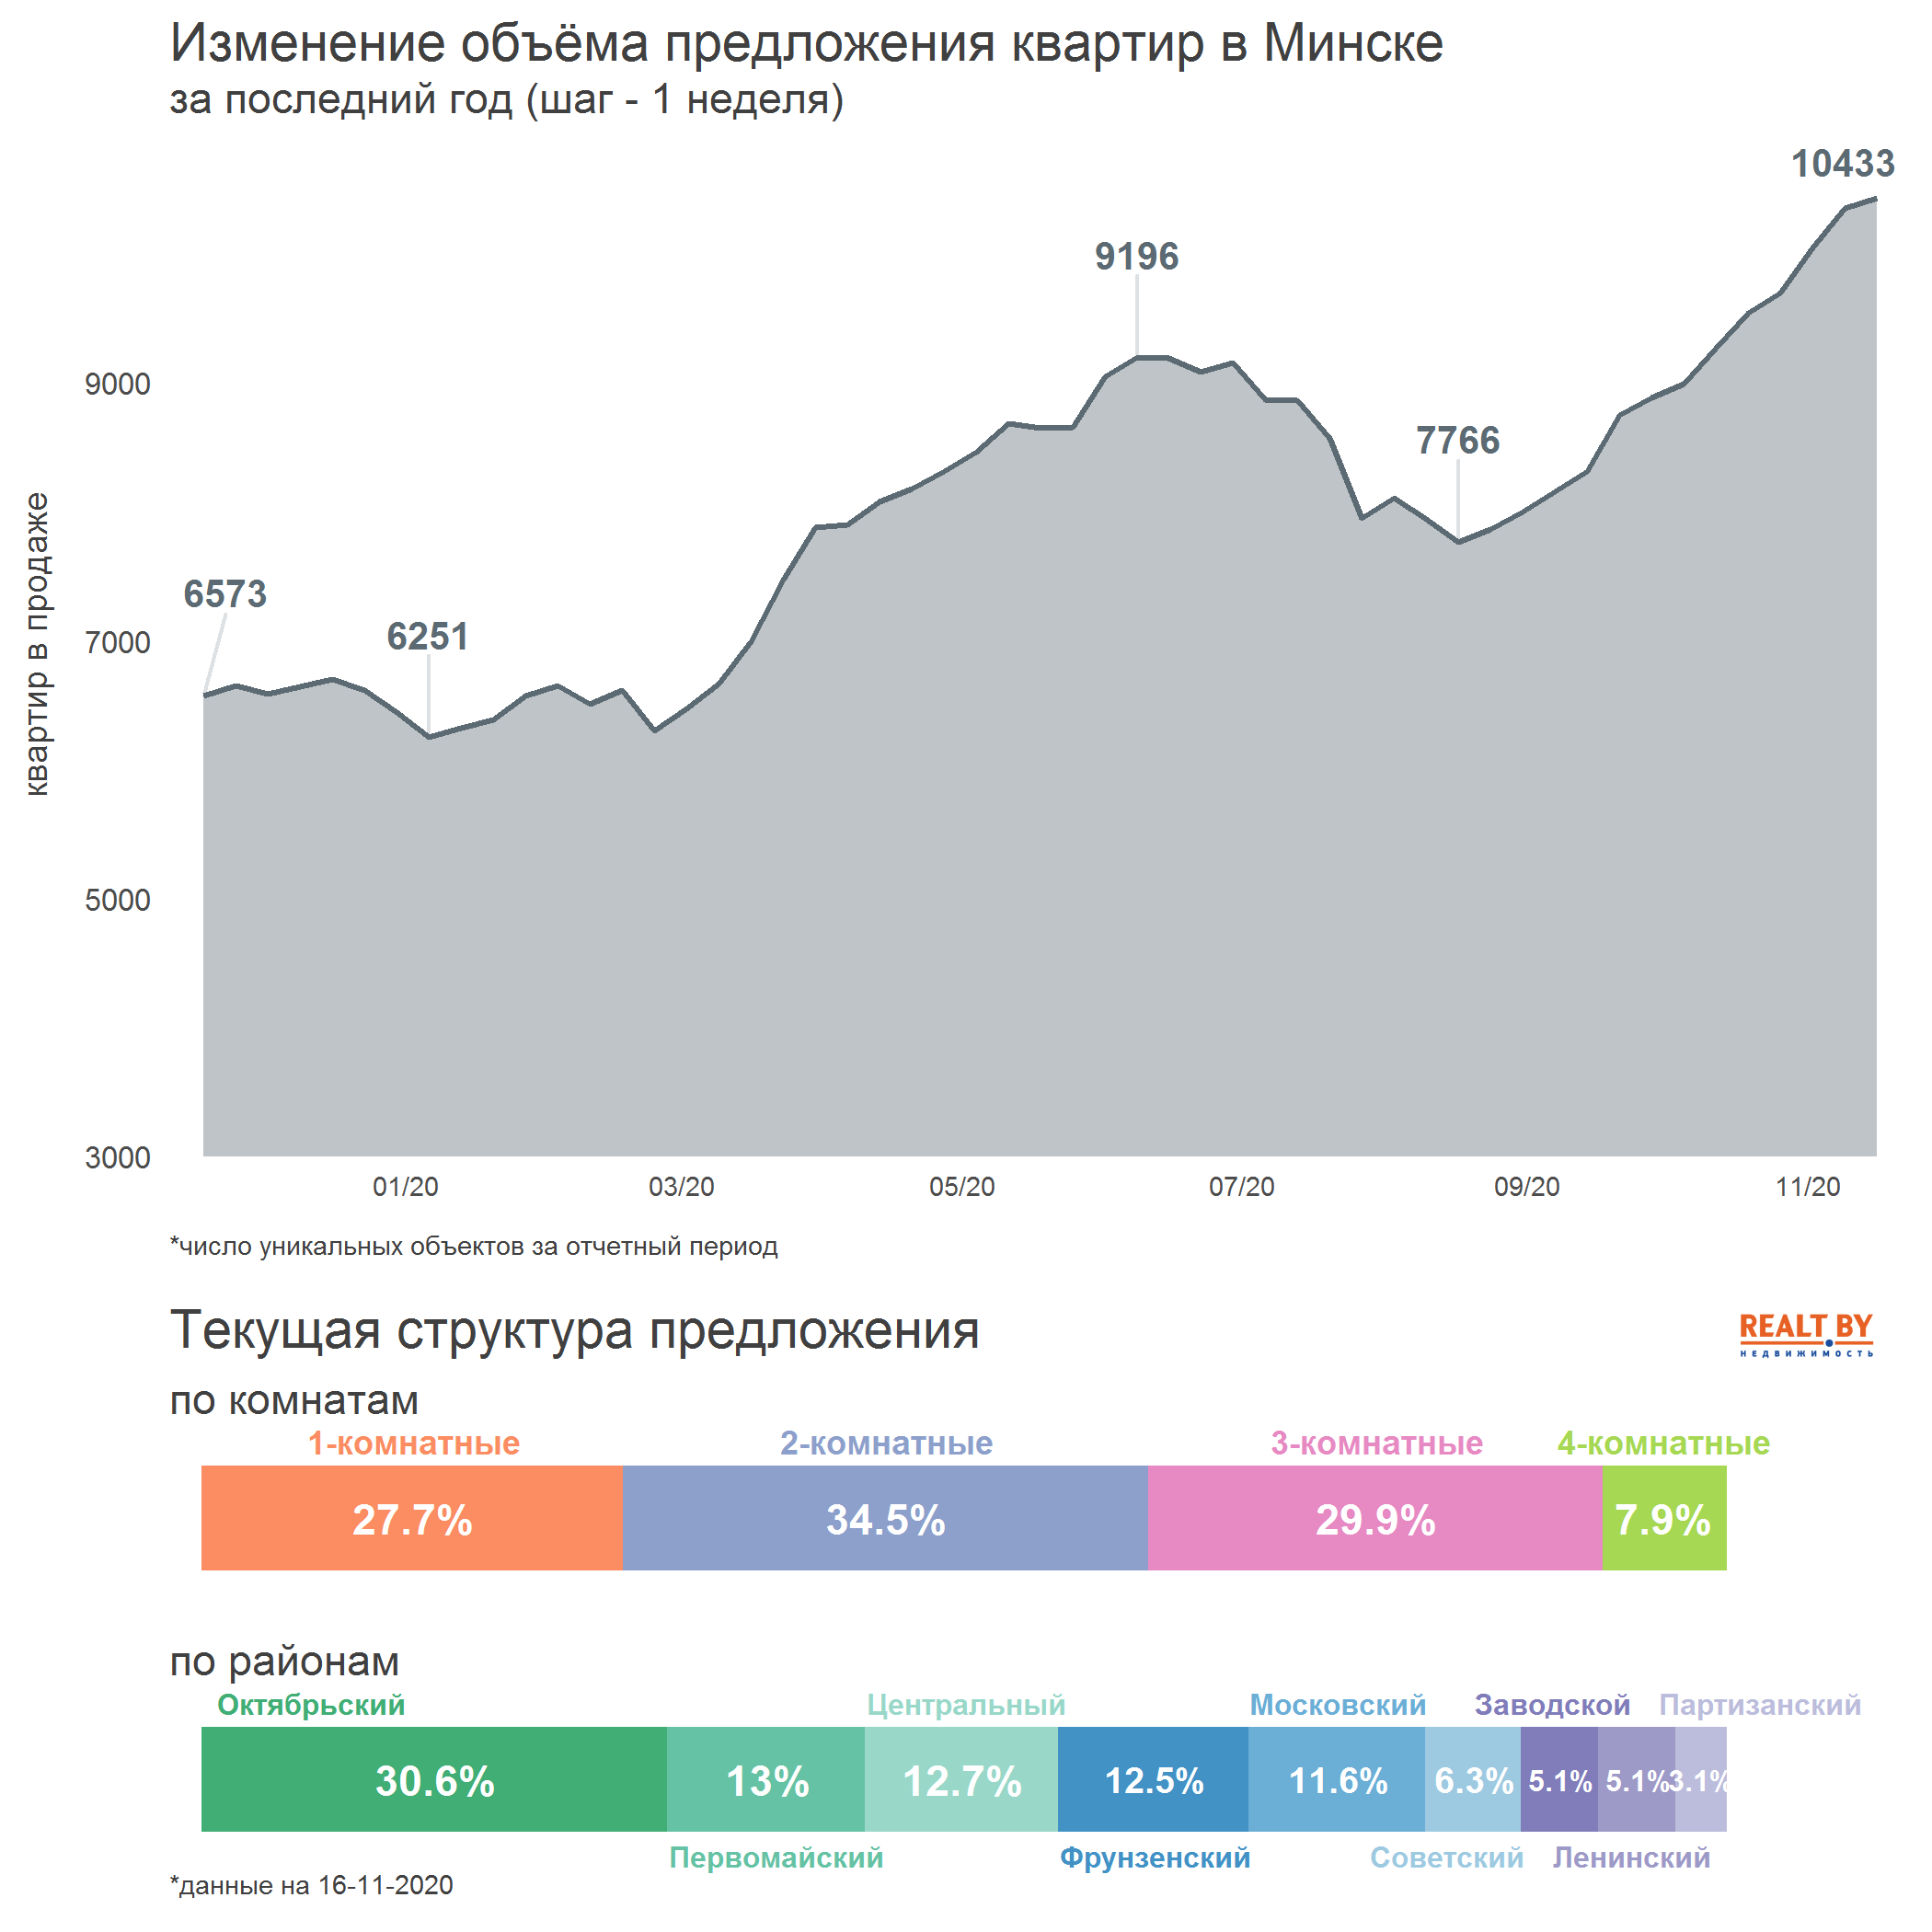 Мониторинг цен предложения квартир в Минске за 9-16 ноября 2020 года